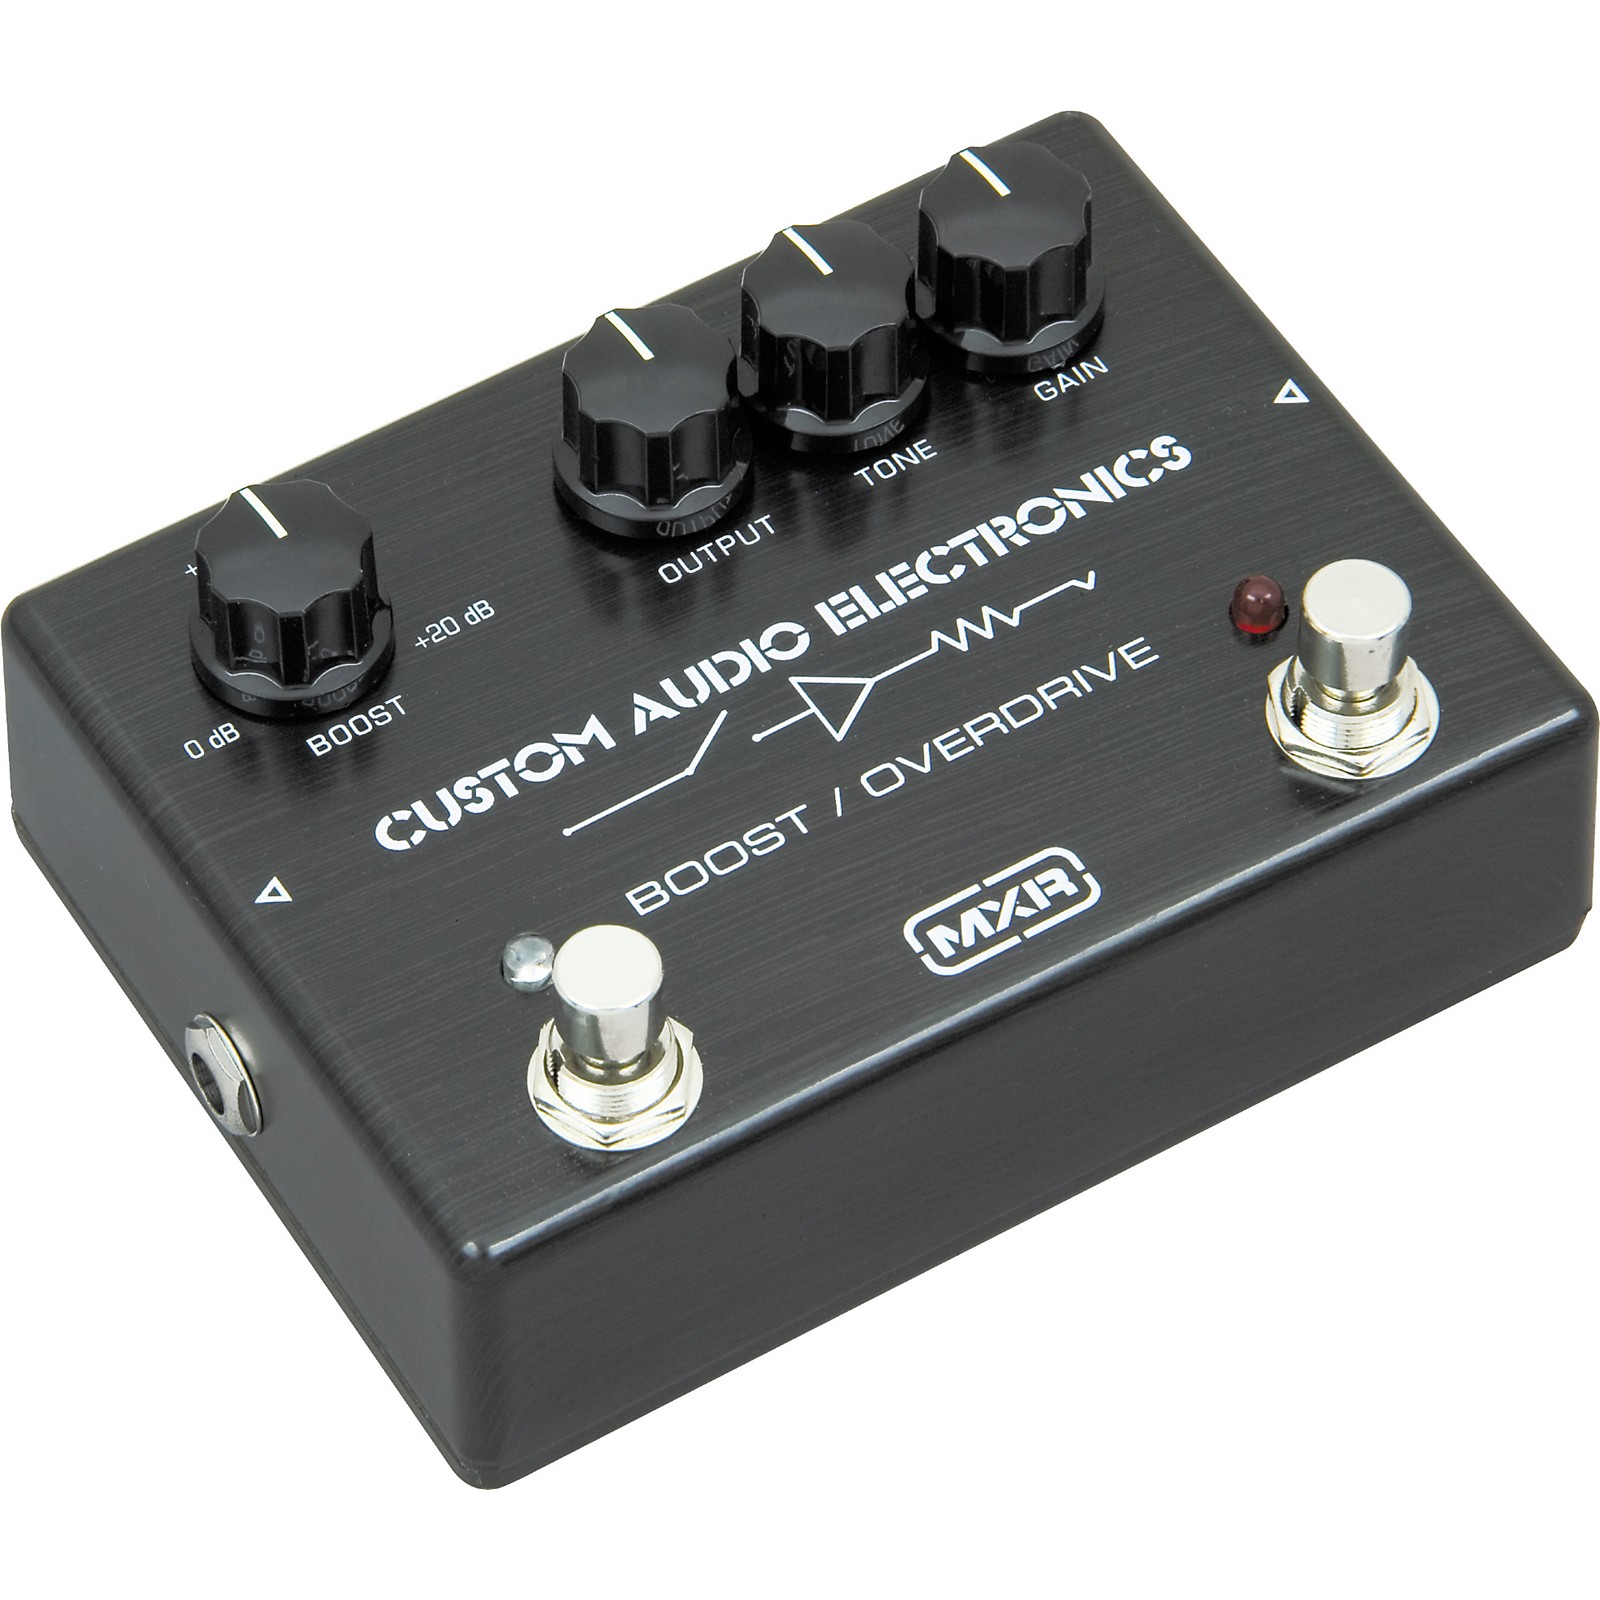 MXR Custom Audio Electronics MC-402 Boost/Overdrive Pedal